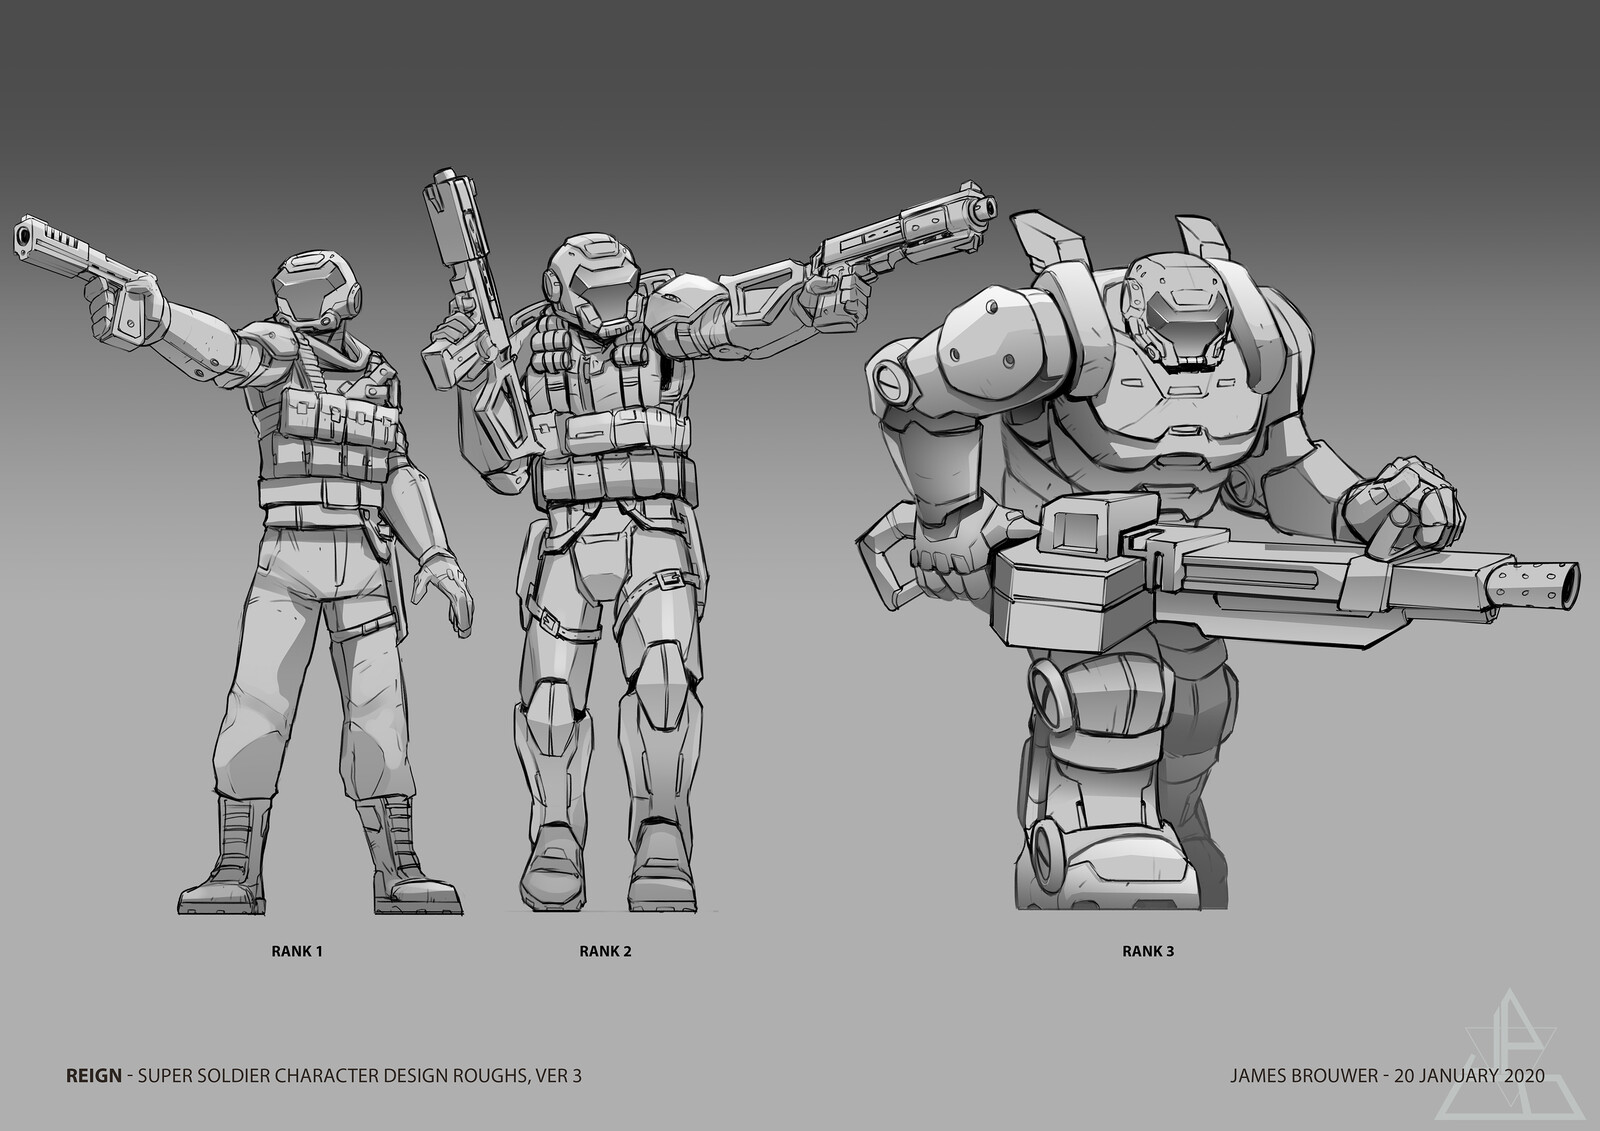 Super Soldiers, version 3.